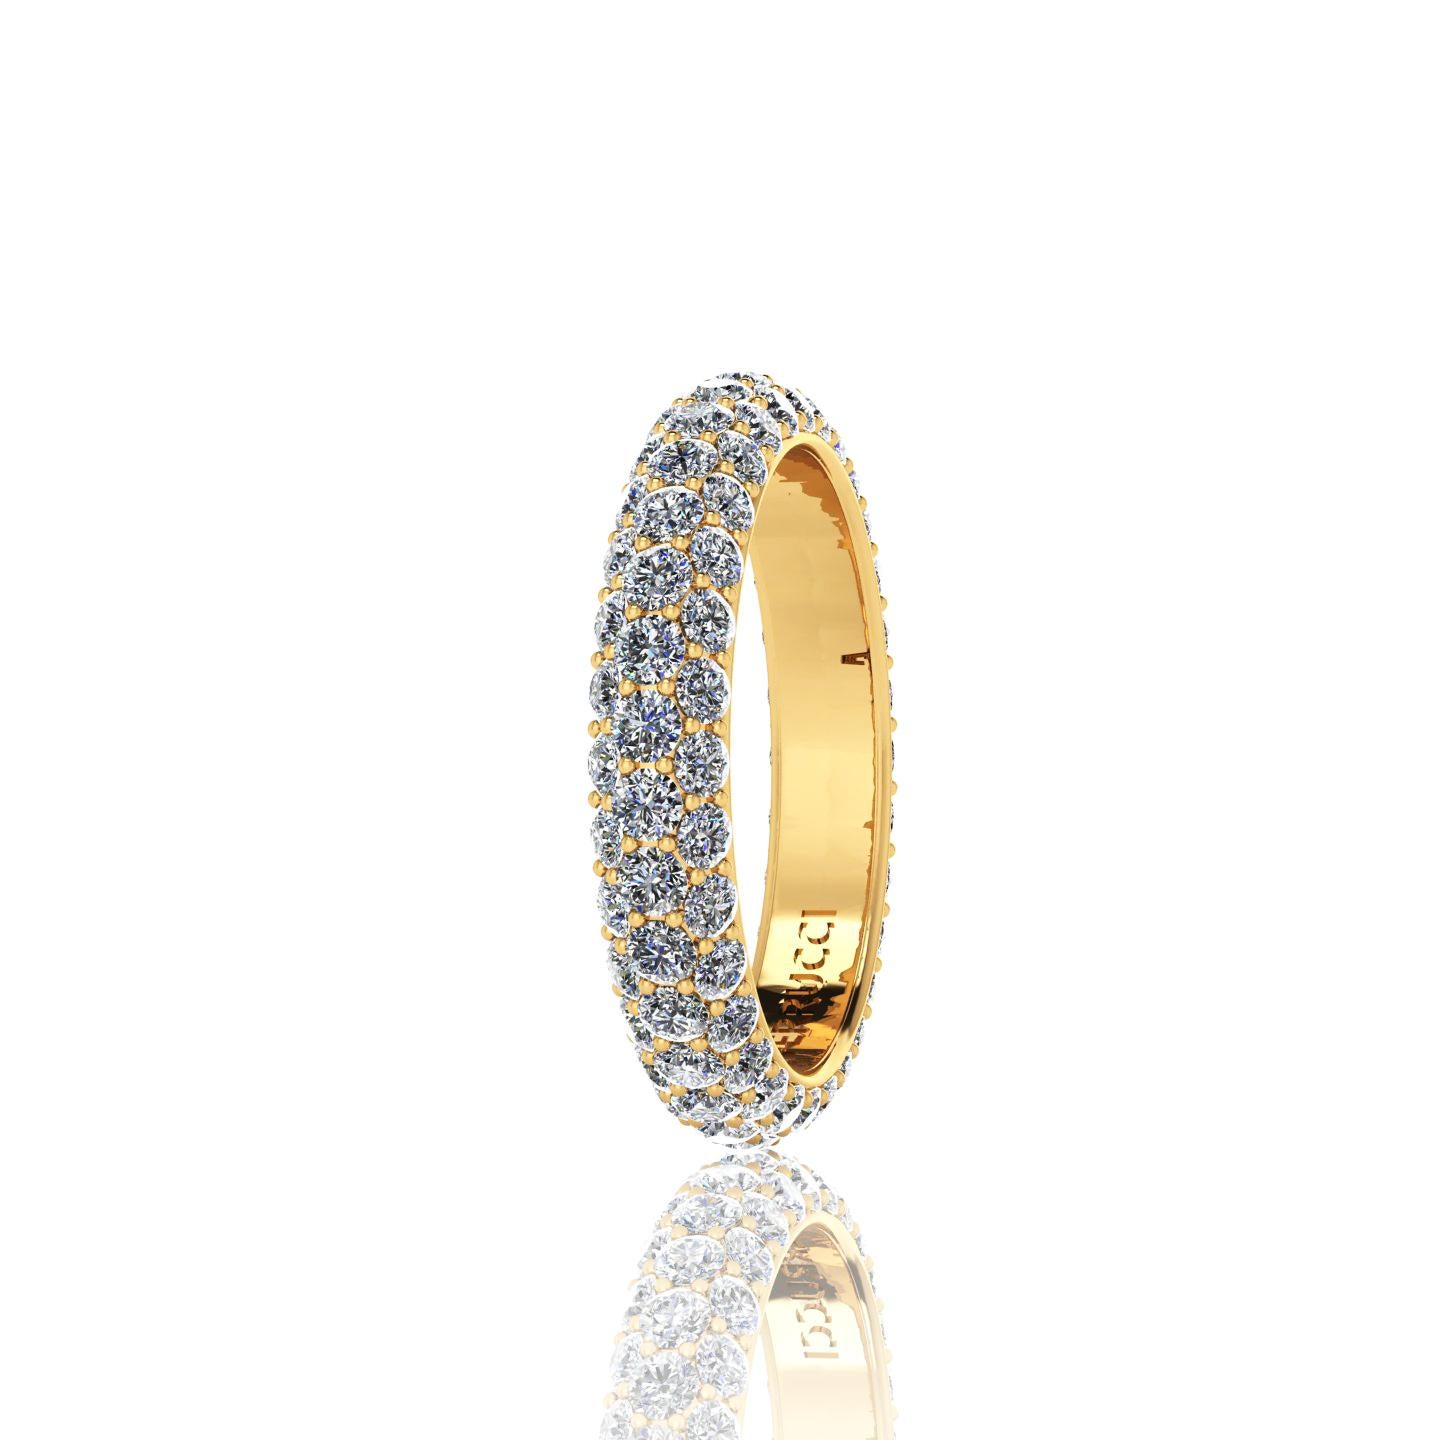 Modern 2.00 Carat White Diamond Pave Ring in 18 Karat Yellow Gold